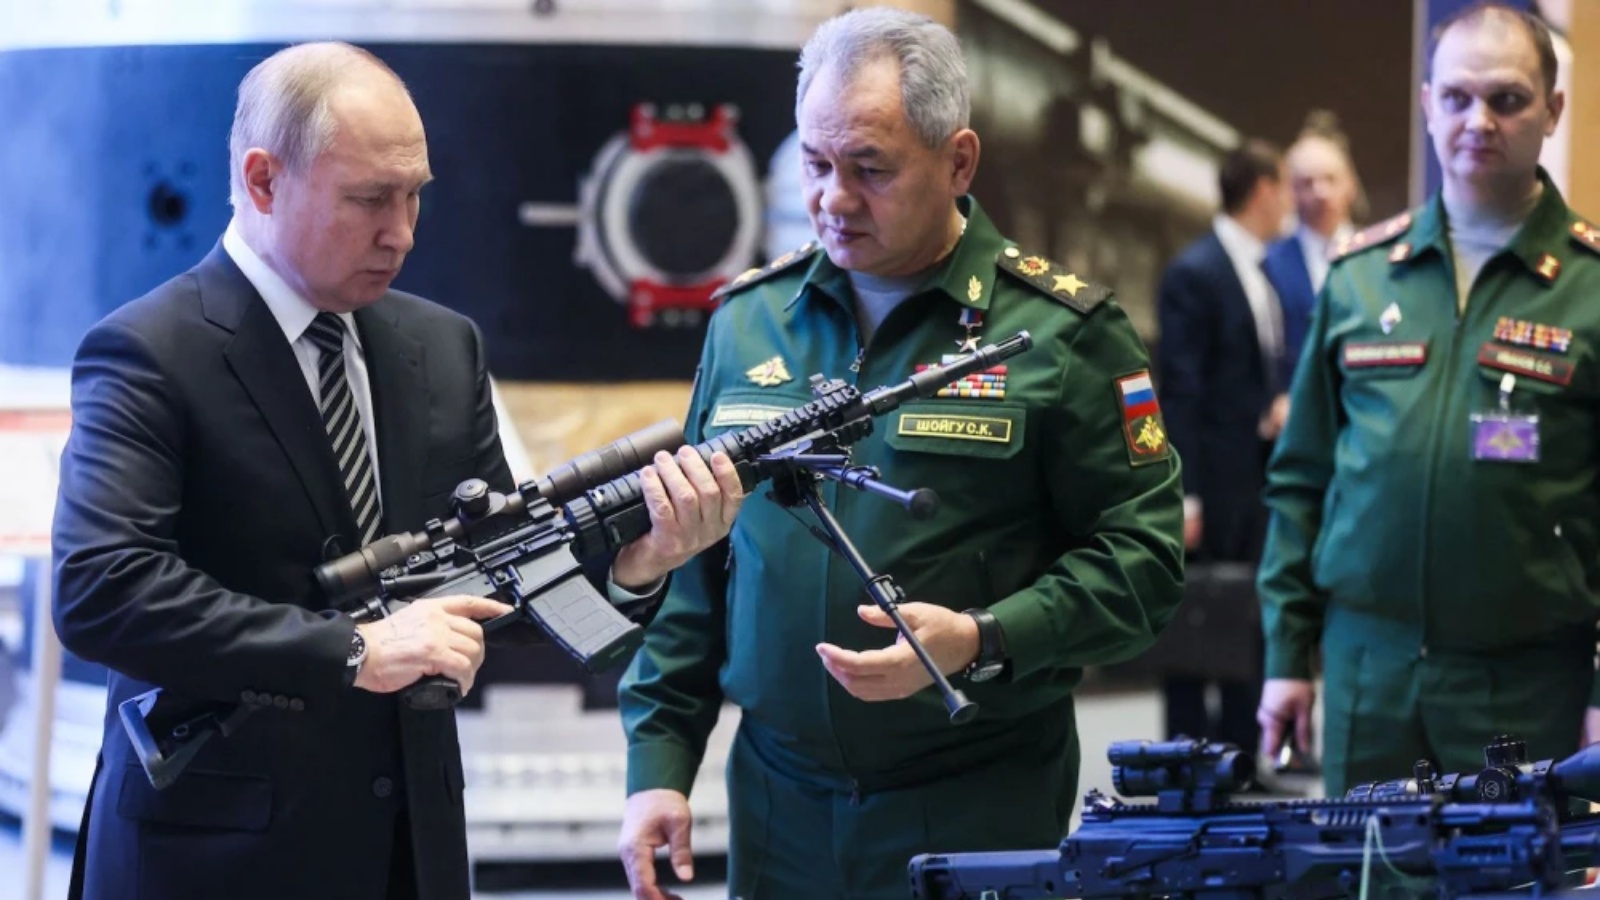 الرئيس الروسي فلاديمير بوتين ووزير الدفاع سيرغي شويغو يقومان بجولة في معرض المعدات العسكرية قبل الاجتماع السنوي لمجلس وزارة الدفاع في موسكو في 21 ديسمبر 2021